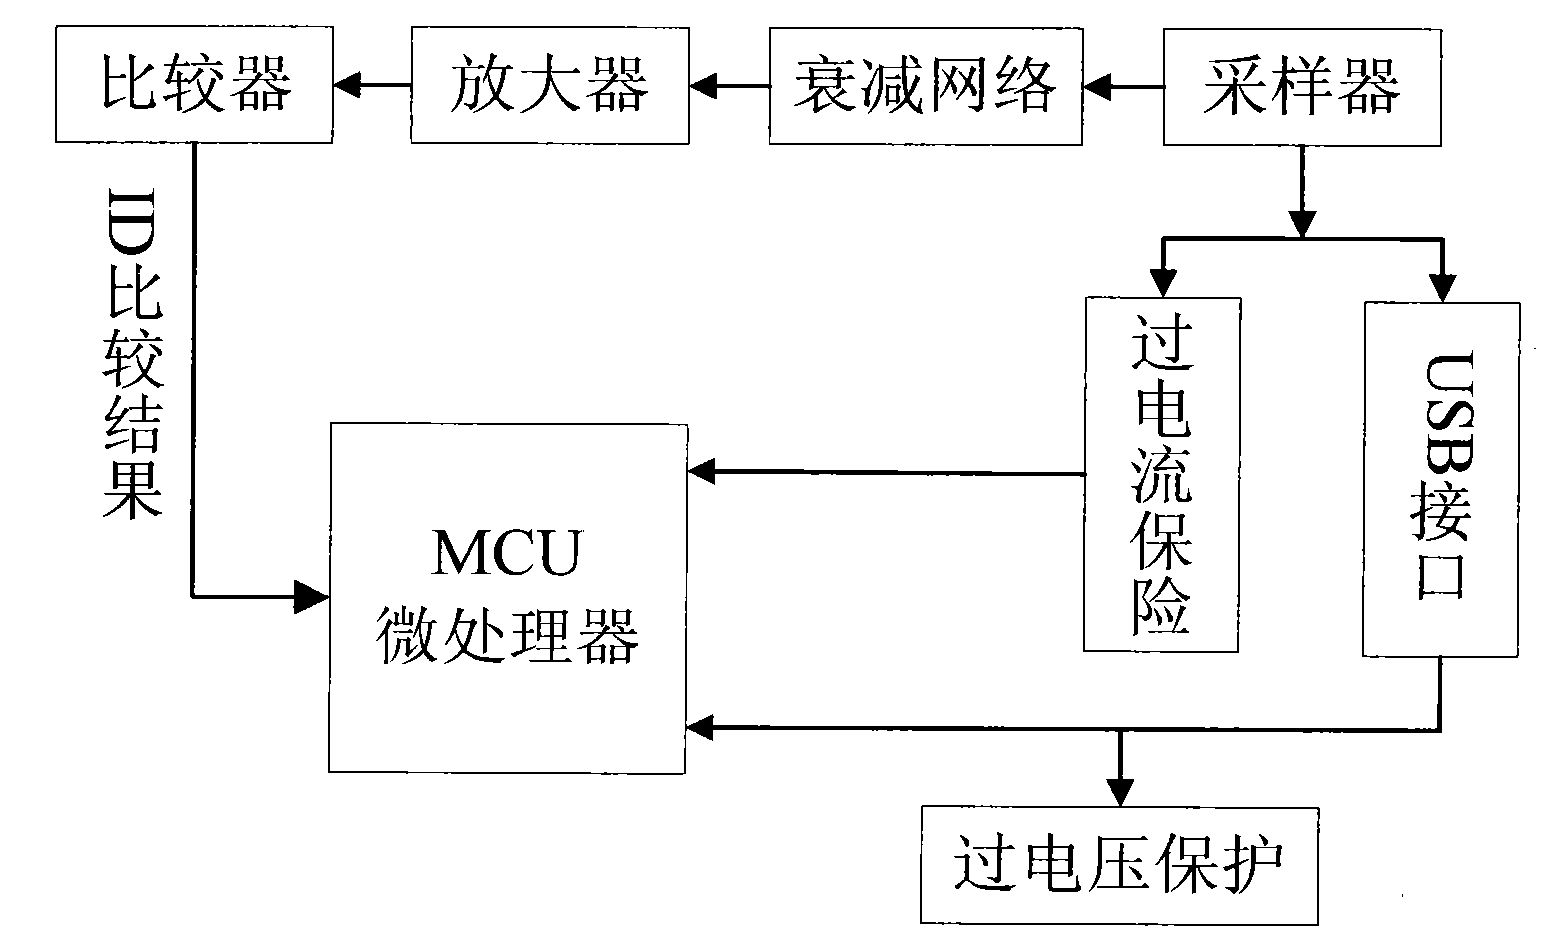 Method and device for realizing OTG based on USB socket